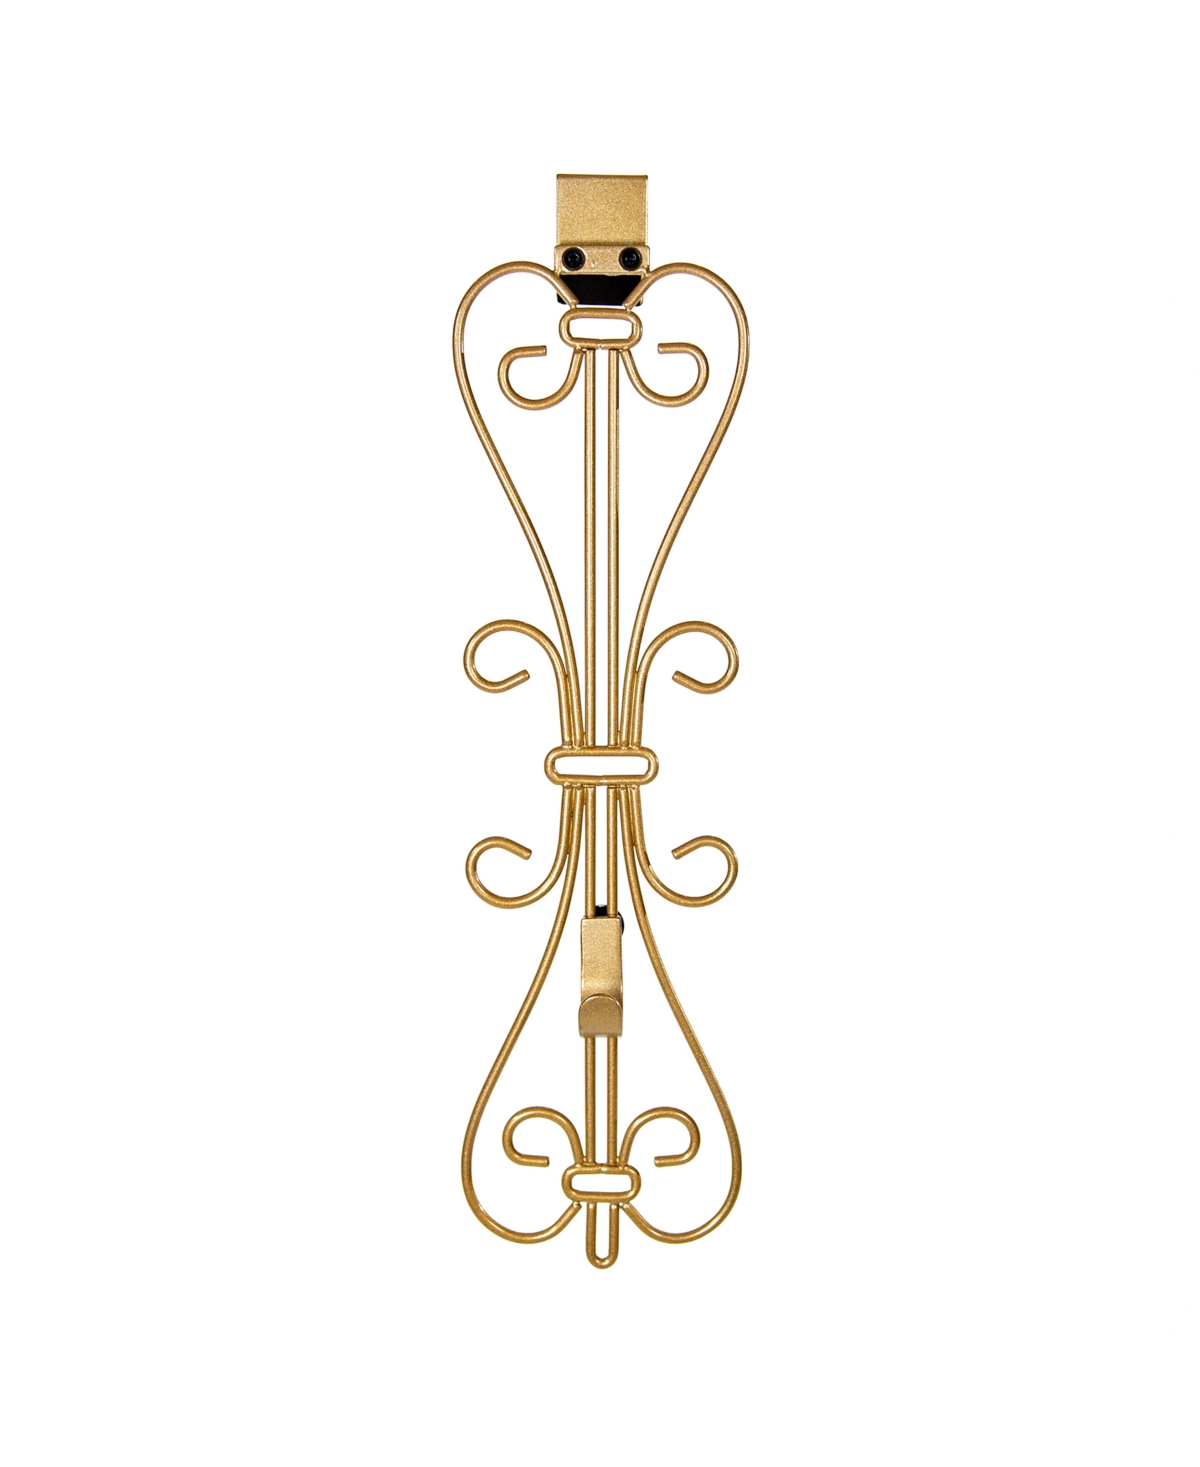 Elegant Adjustable Wreath Door Hanger - Gold-Tone